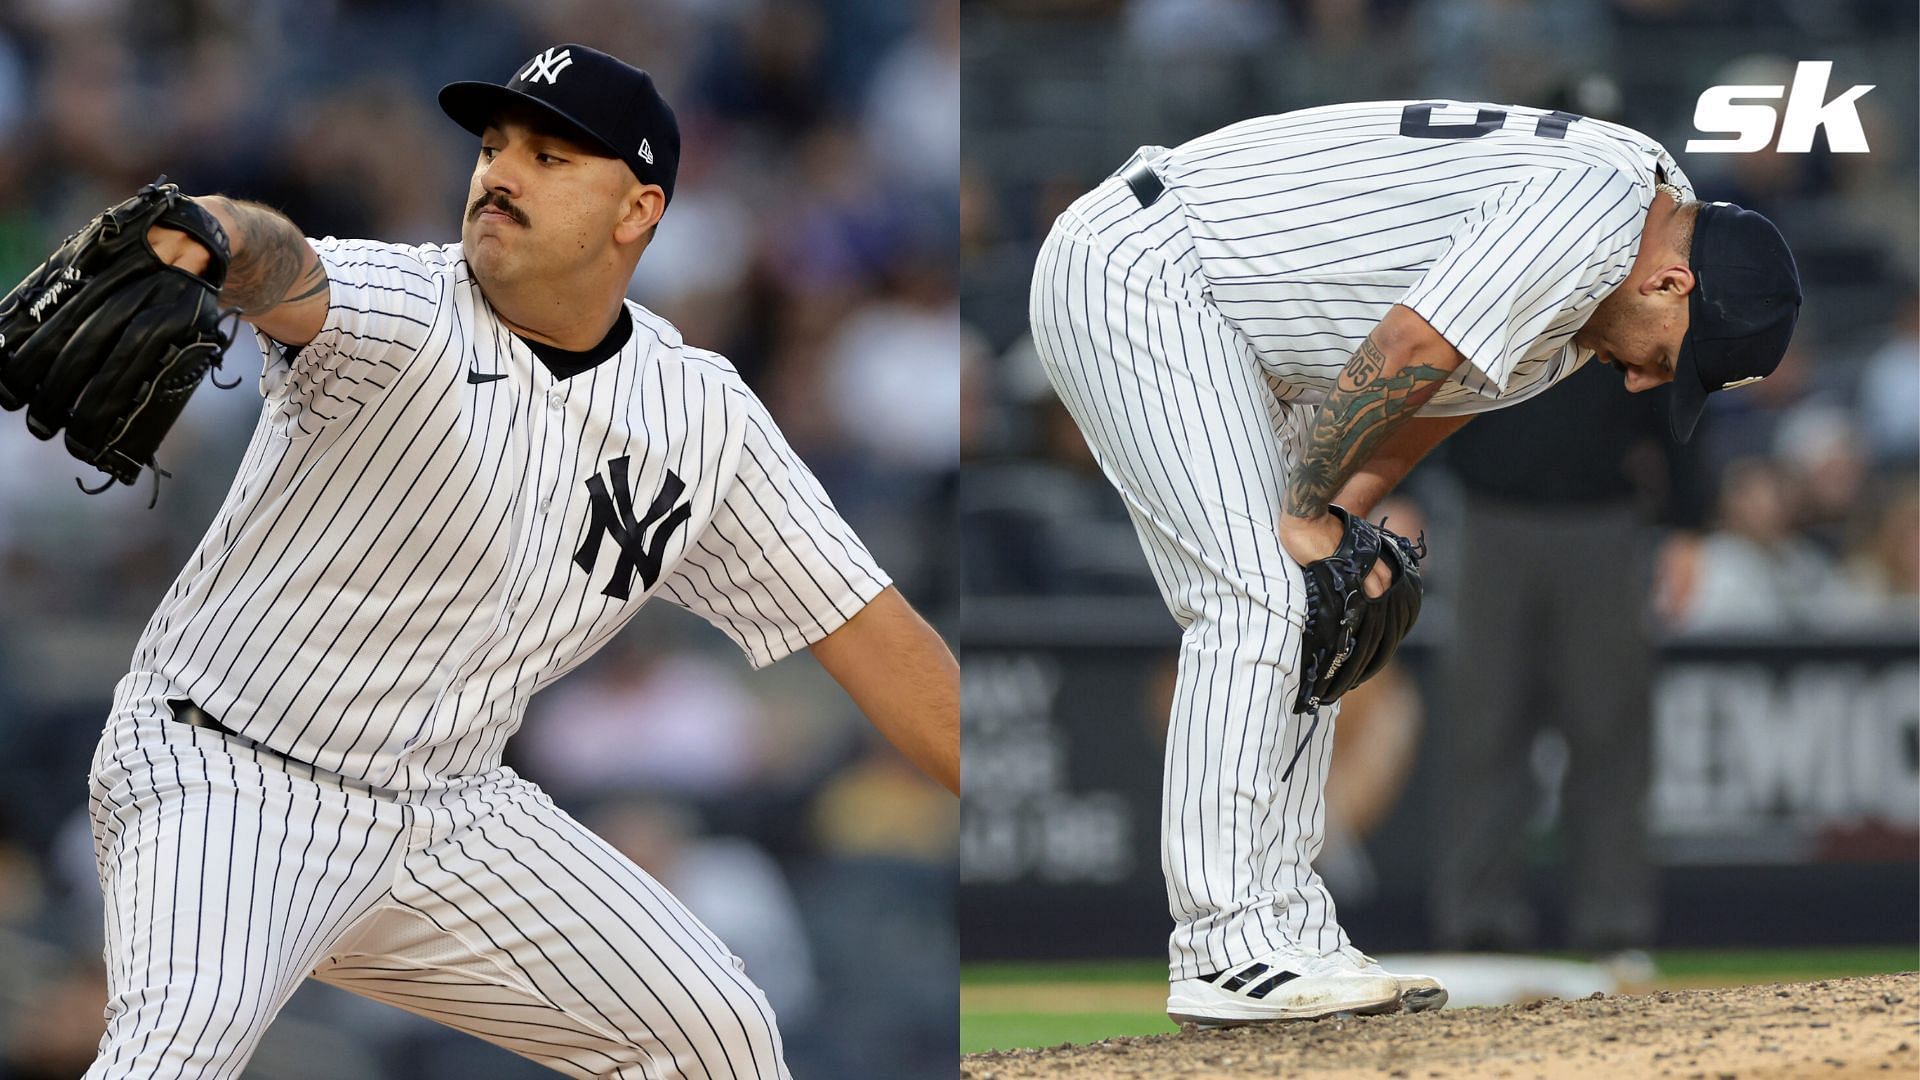 Nestor Cortes injury: Nestor Cortes Injury Update: Yankees